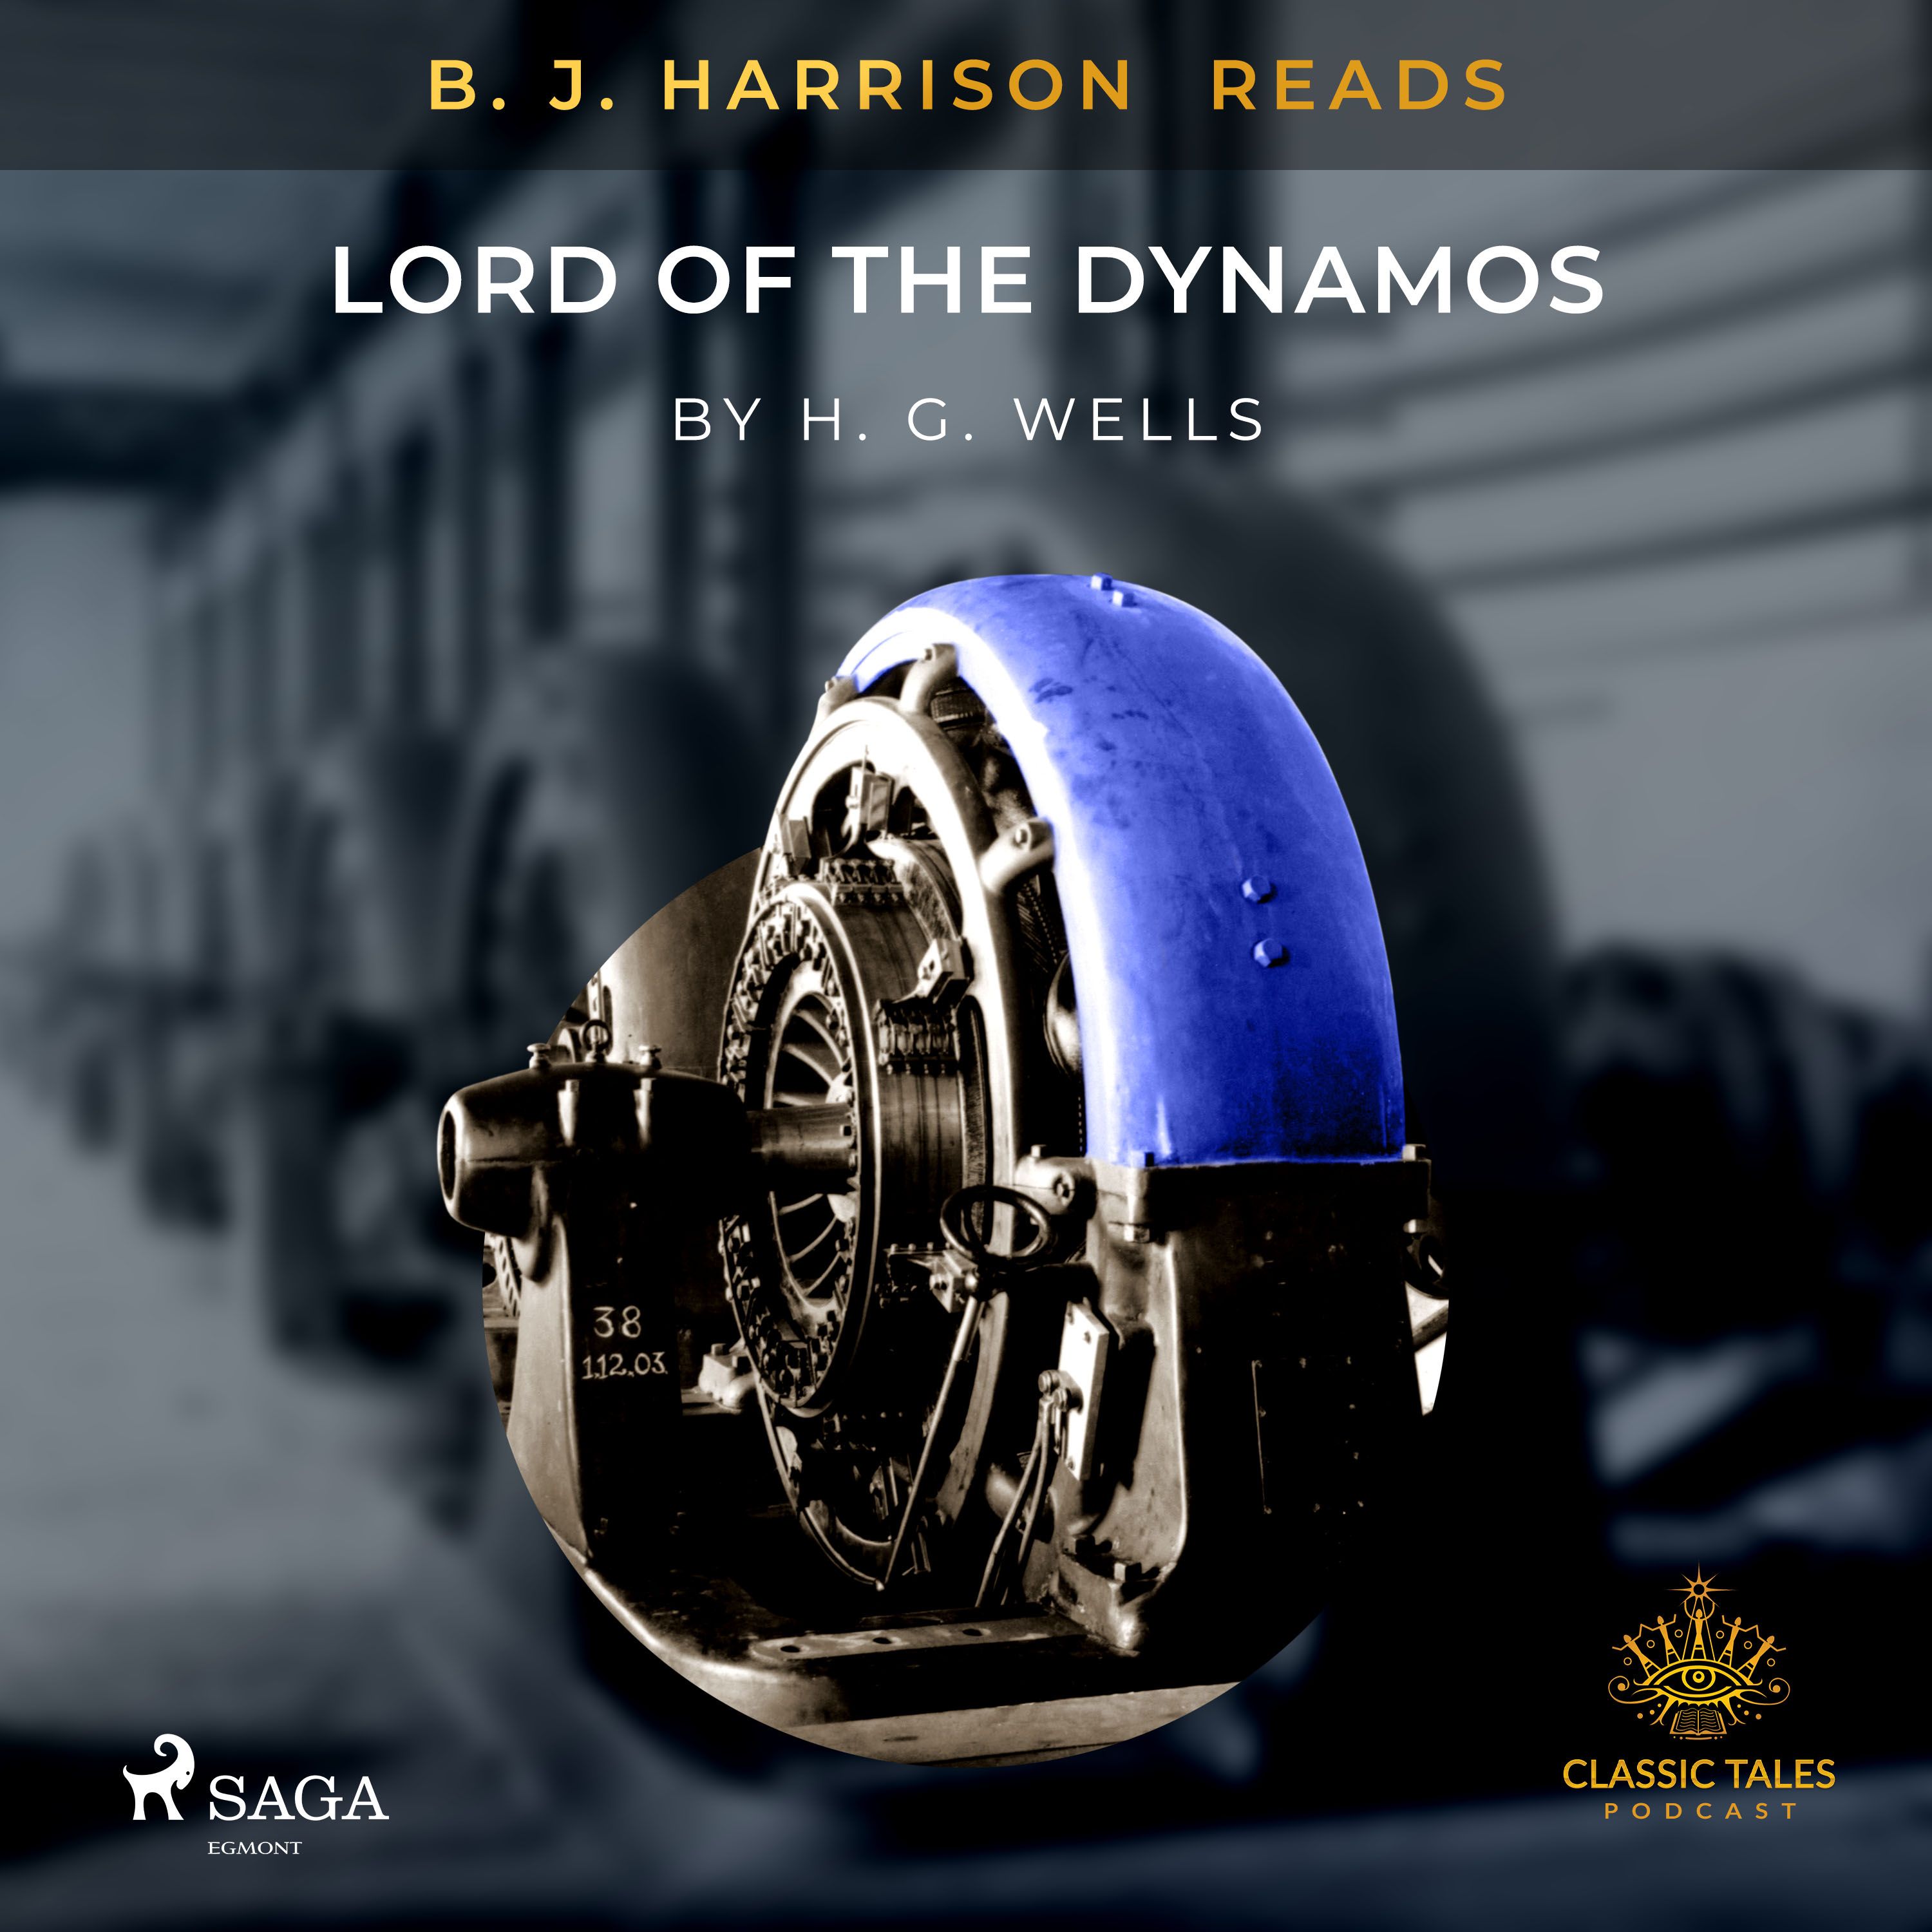 B.J. Harrison Reads Lord of the Dynamos, ljudbok av H. G. Wells